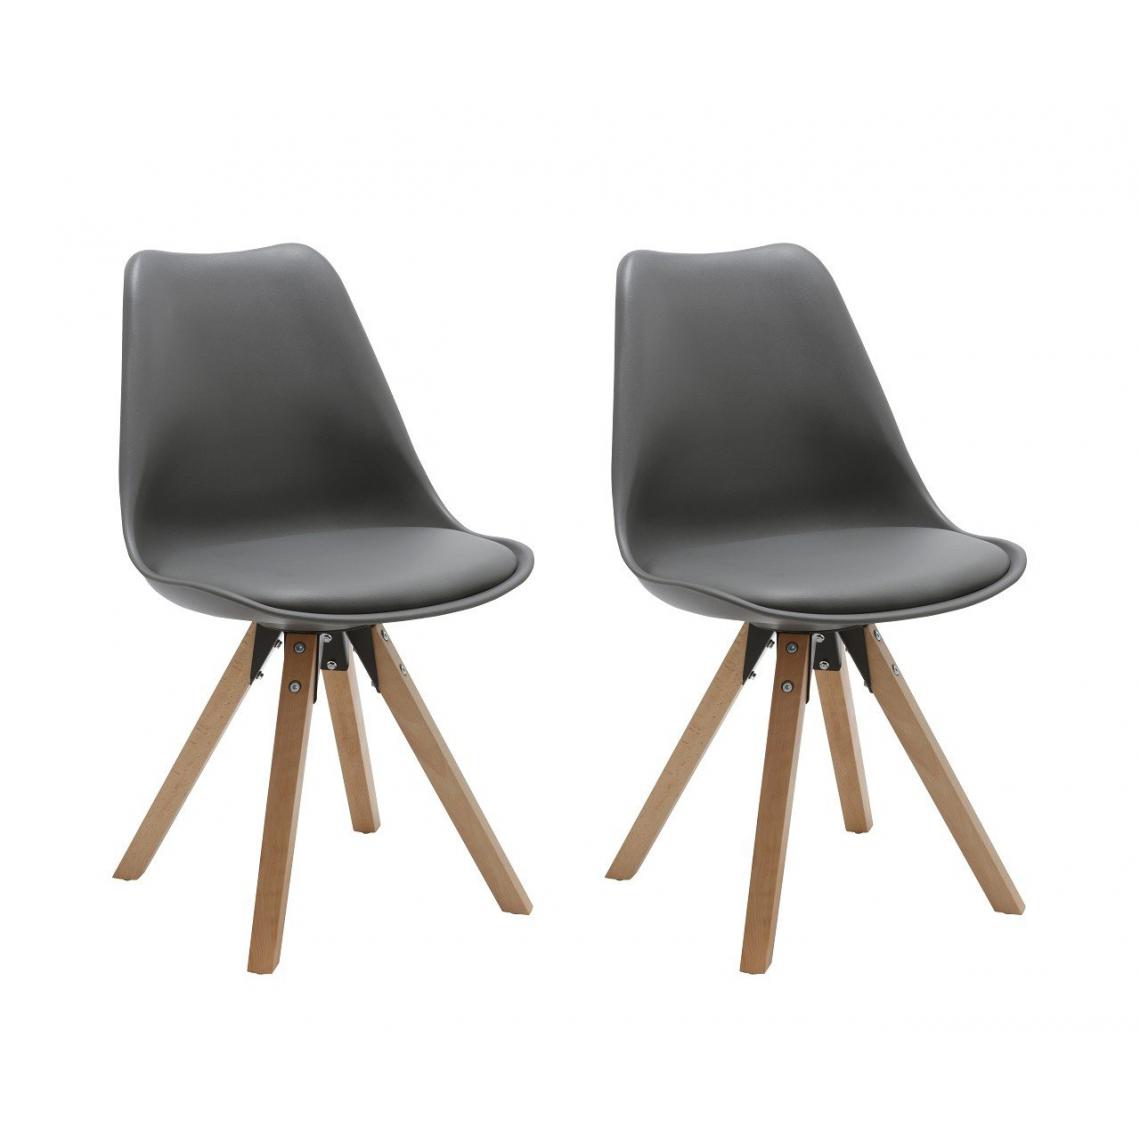 Decoshop26 - Set de 2 chaises de salle à manger design simili-cuir gris pieds bois CDS09029 - Chaises